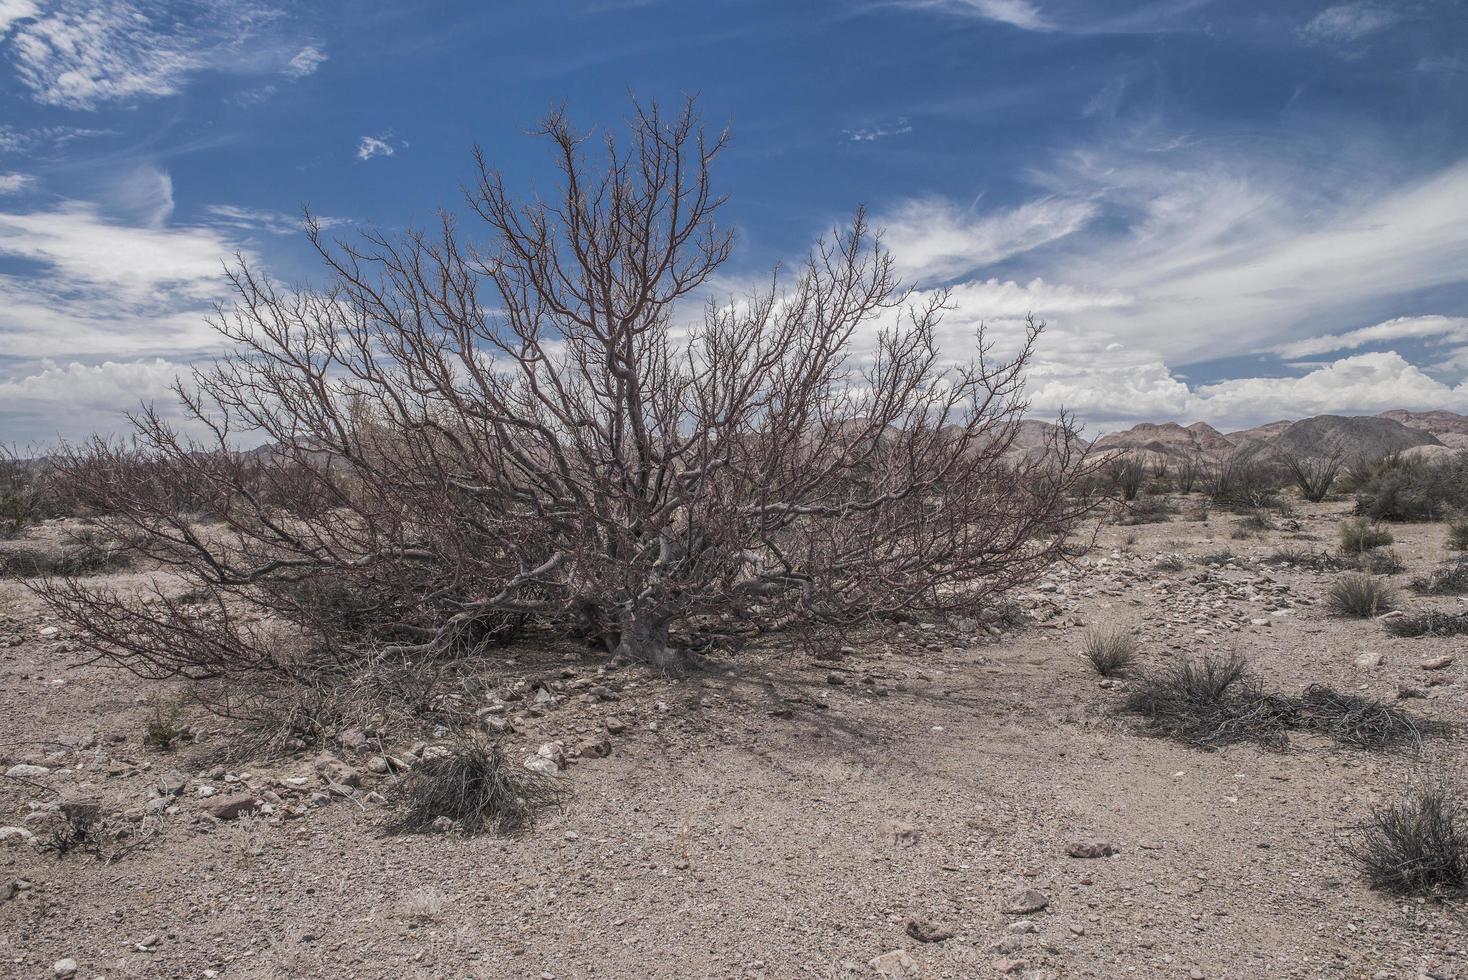 La flora en el desierto de Baja California, en la península de Baja, bajo un cielo nublado azul foto